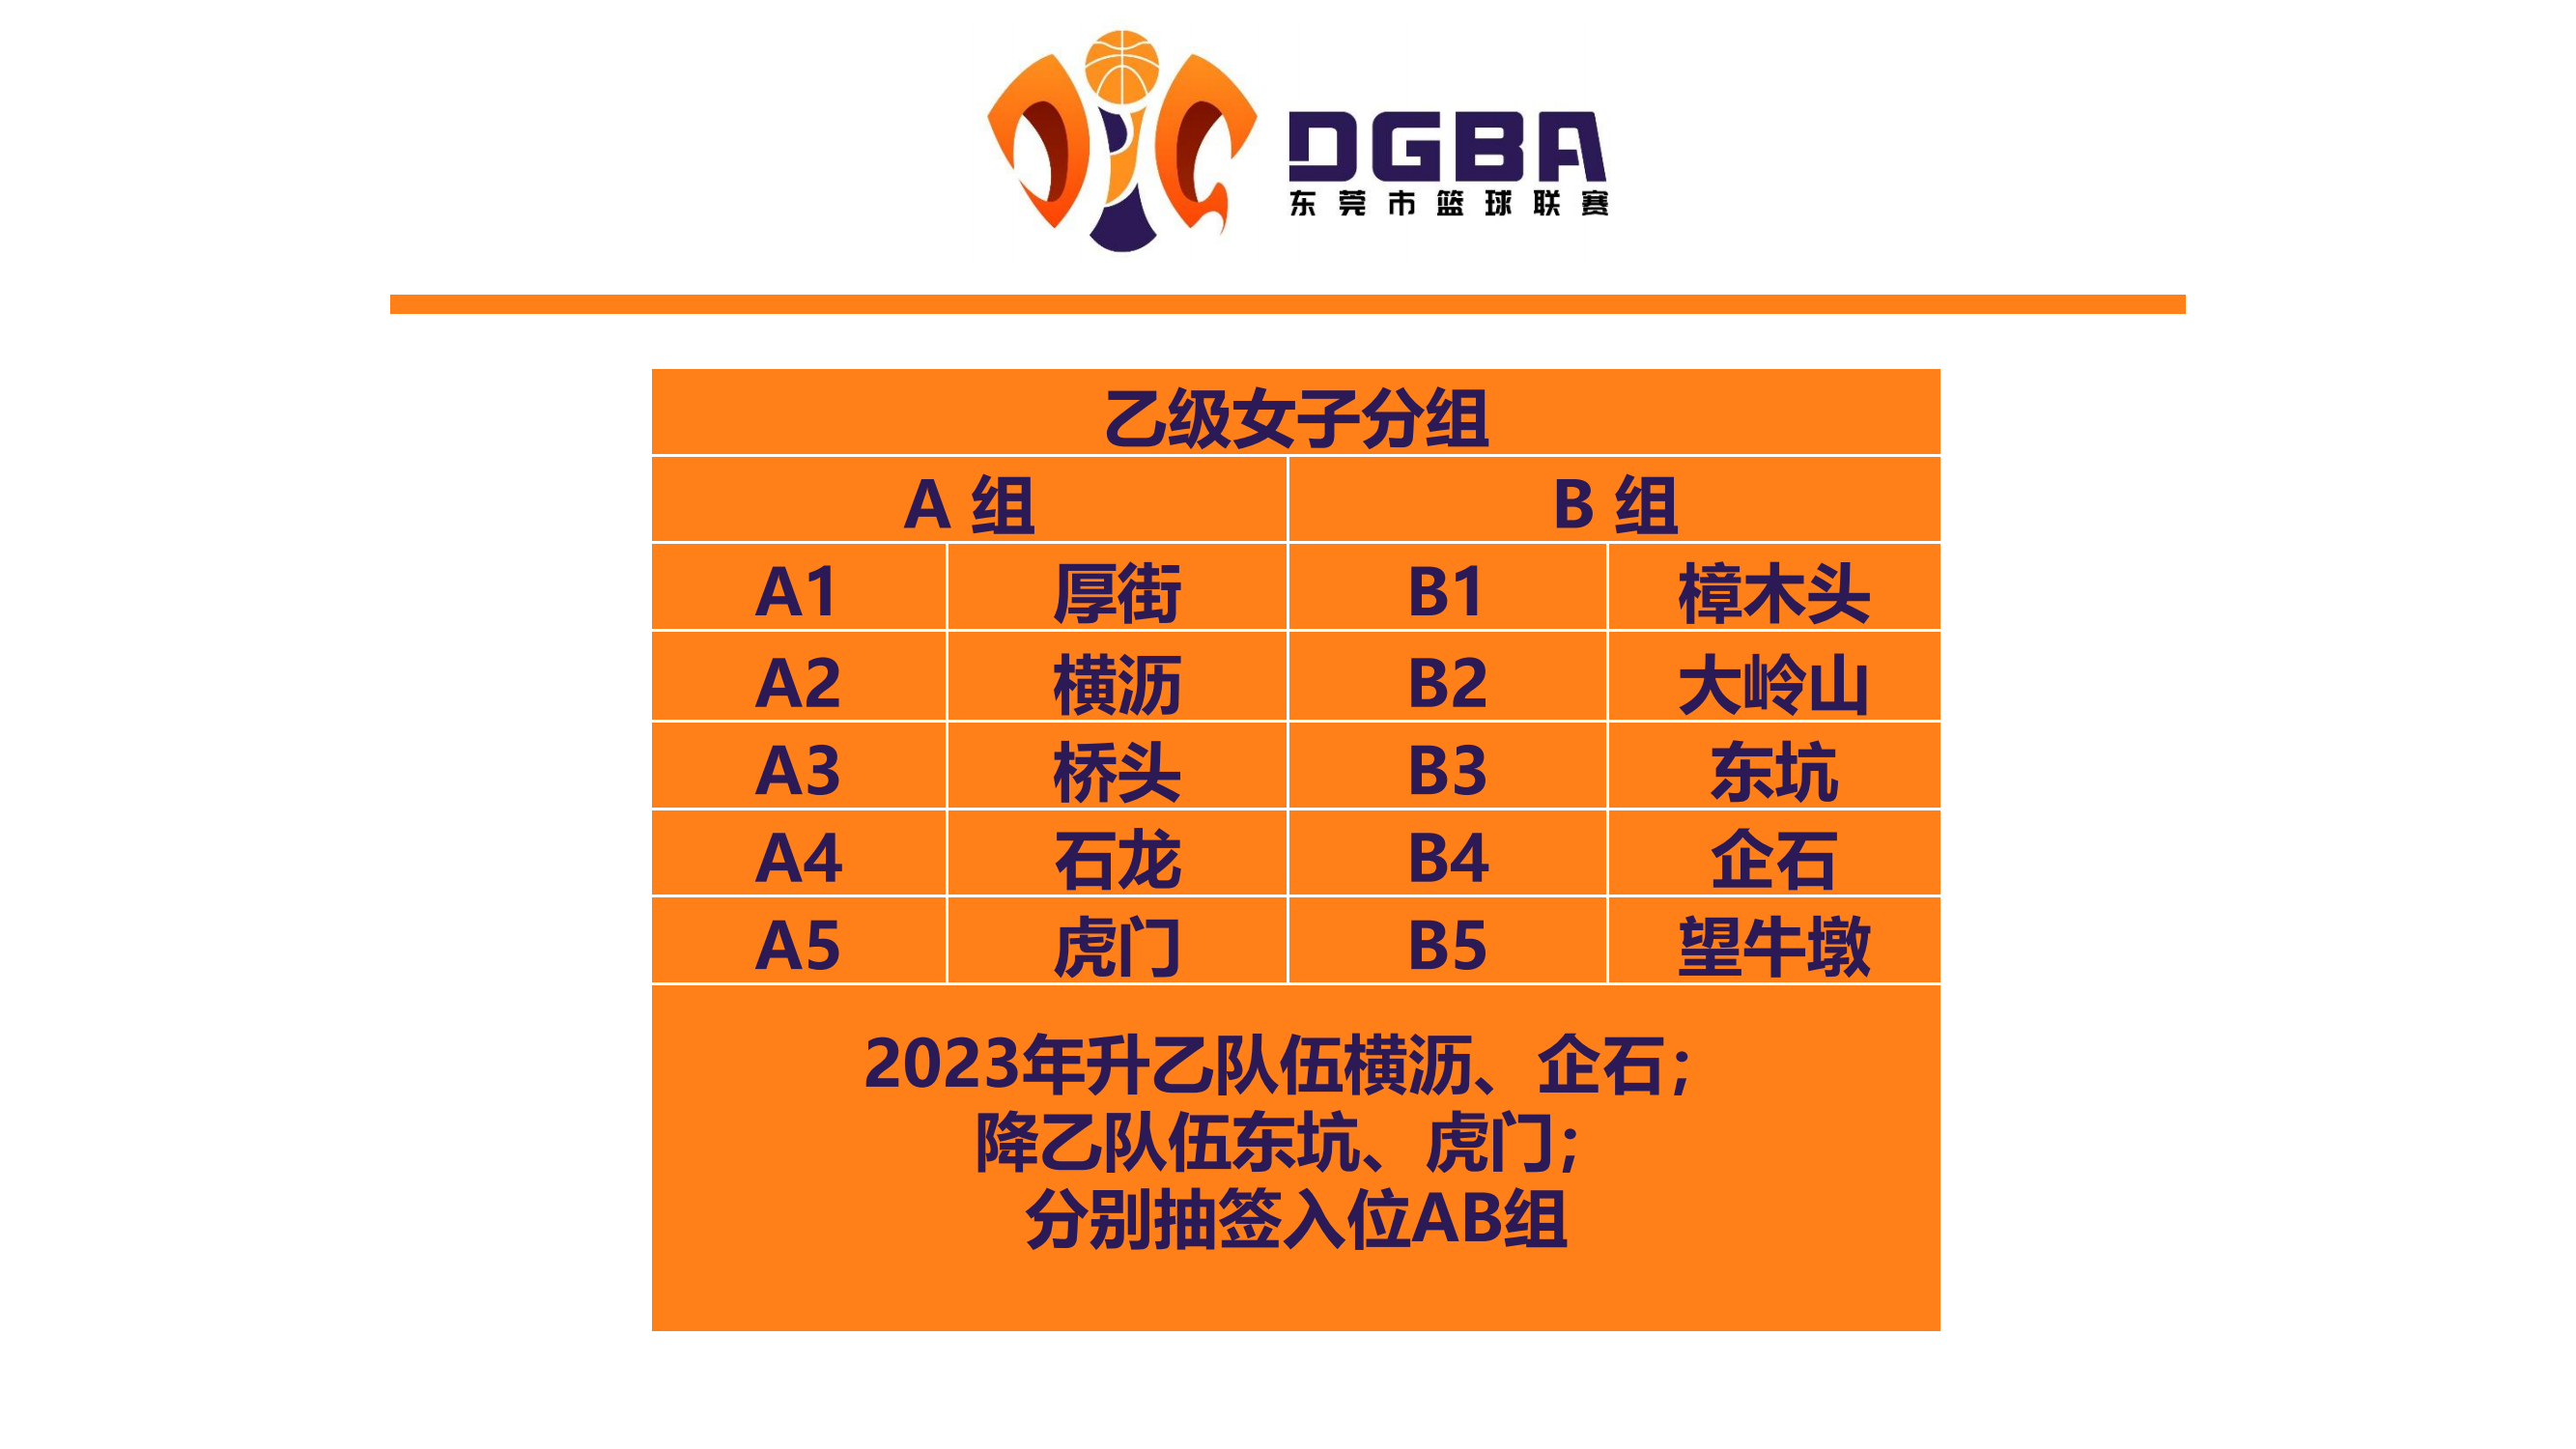 2024年东莞市篮球比赛工作会议(1)_03.png